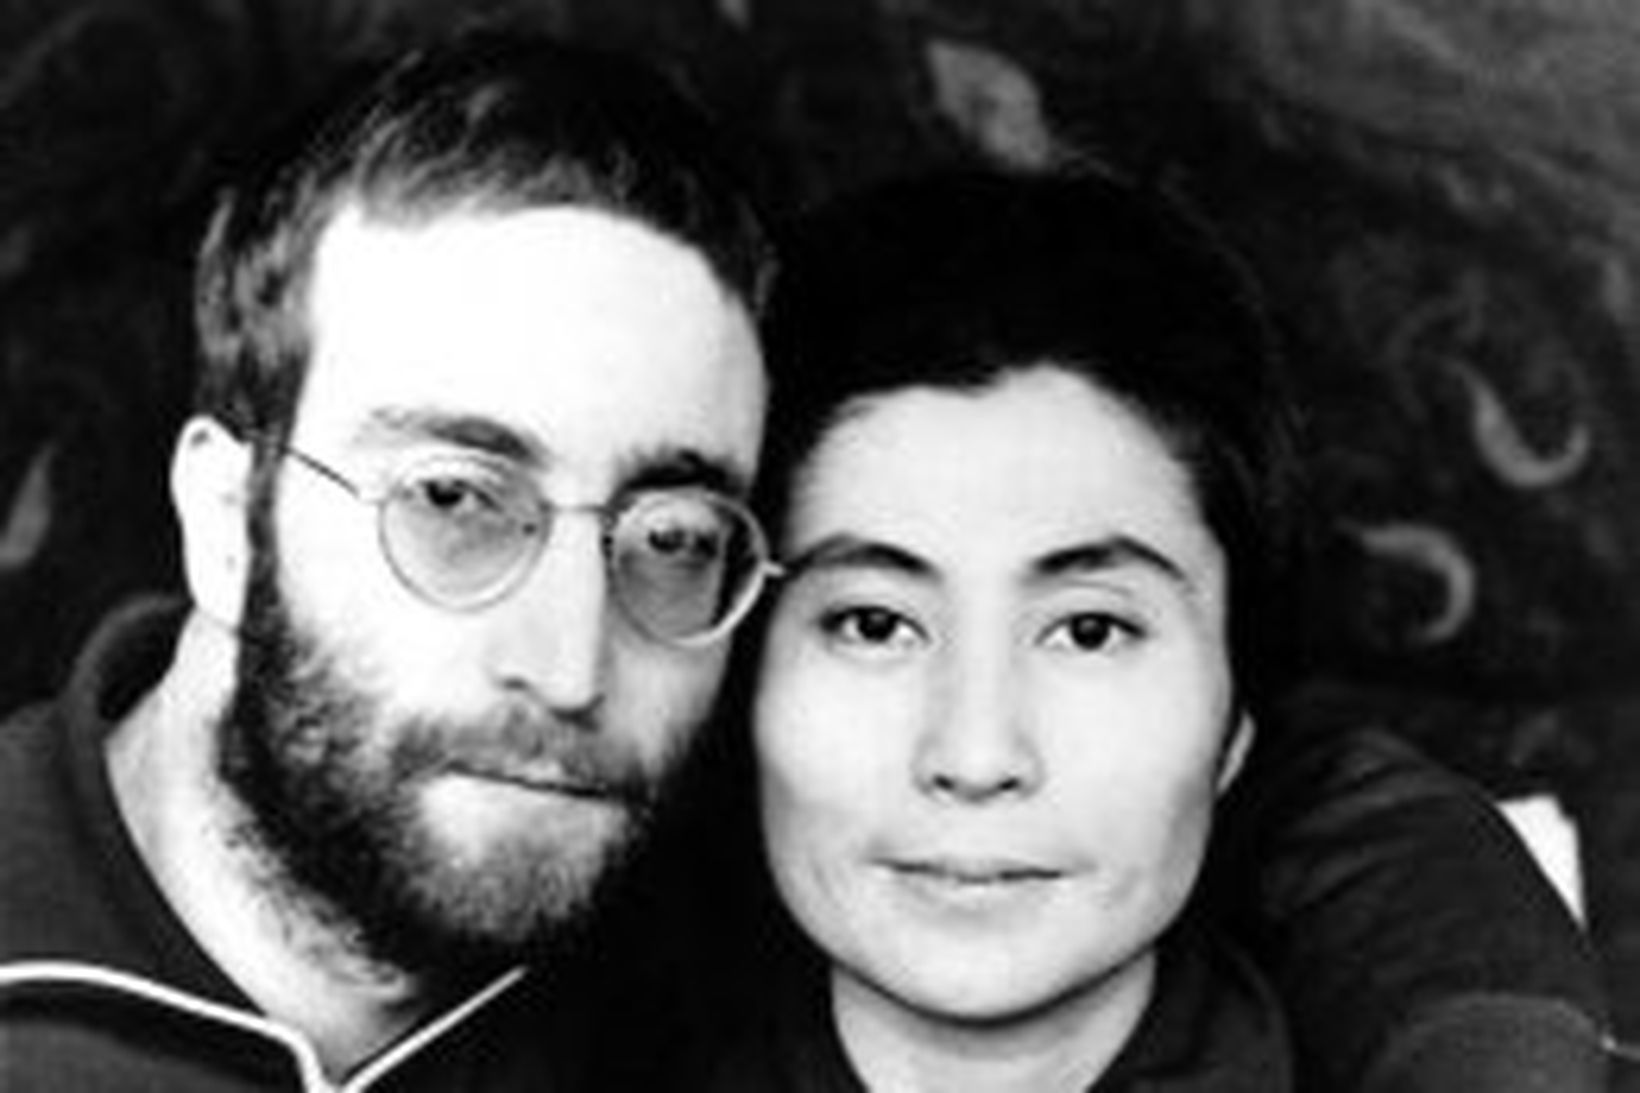 John Lennon með gleraugun og kona hans Yoko Ono.